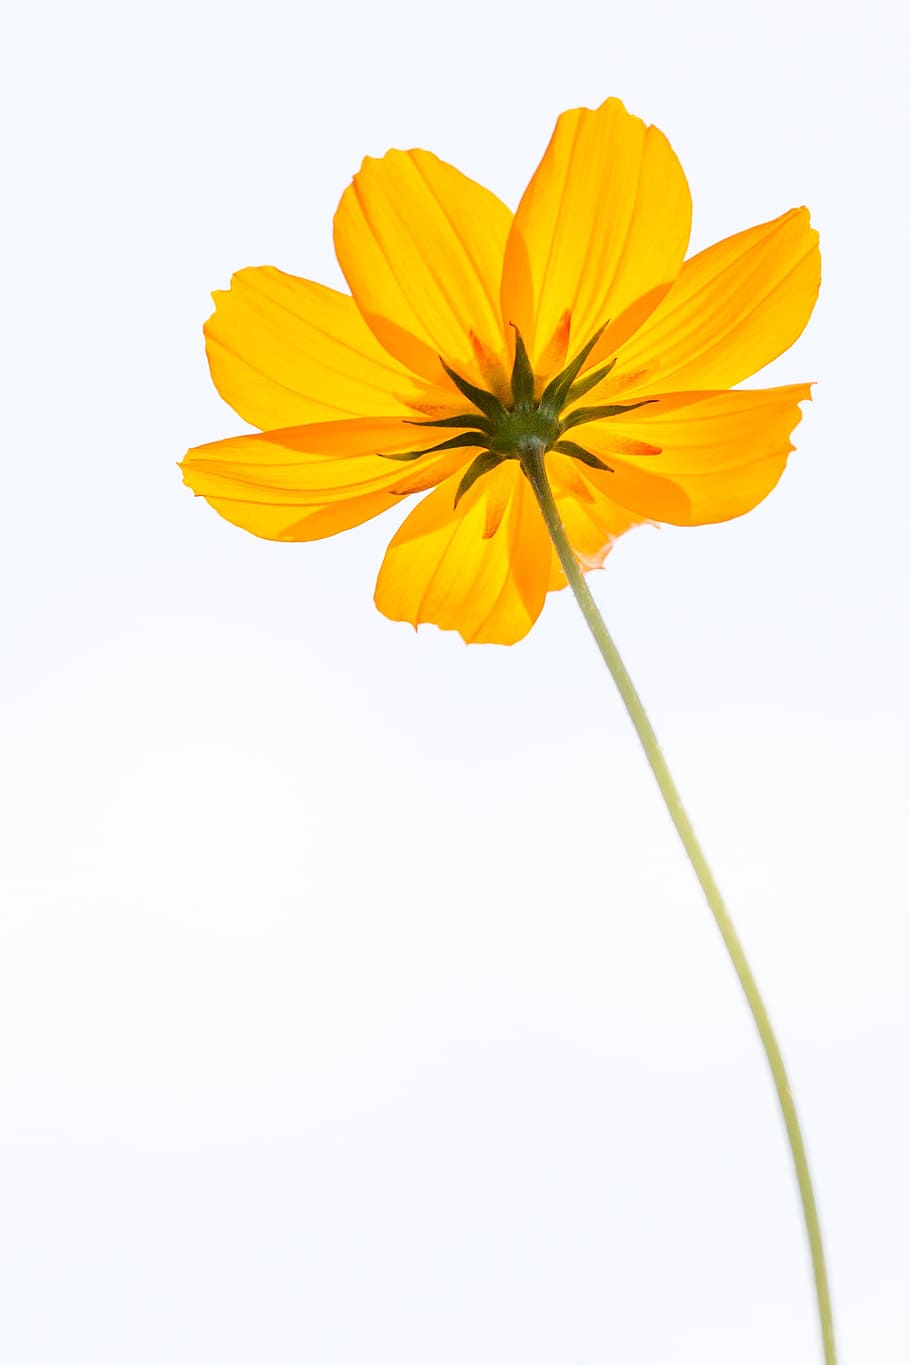 黄色のコスモスの花 コスモス 花 黄色 花びら 一輪の花 自然 植物 夏 デイジー Pxfuel